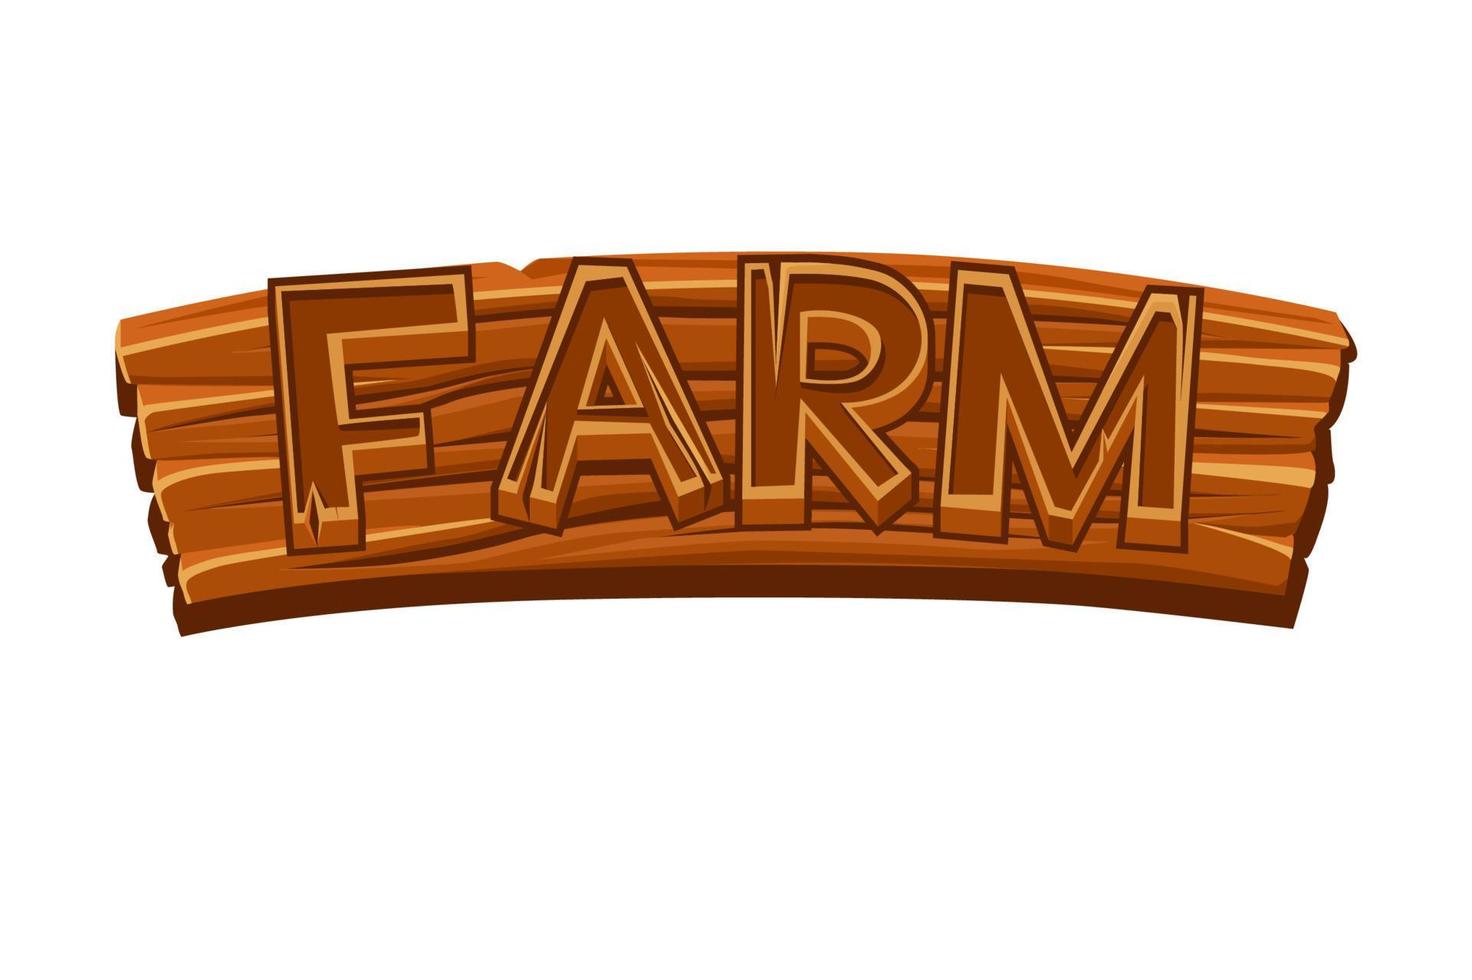 houten oud bord met boerderij logo voor grafisch ontwerp. vector illustratie van een bruin plank uithangbord voor de spel.